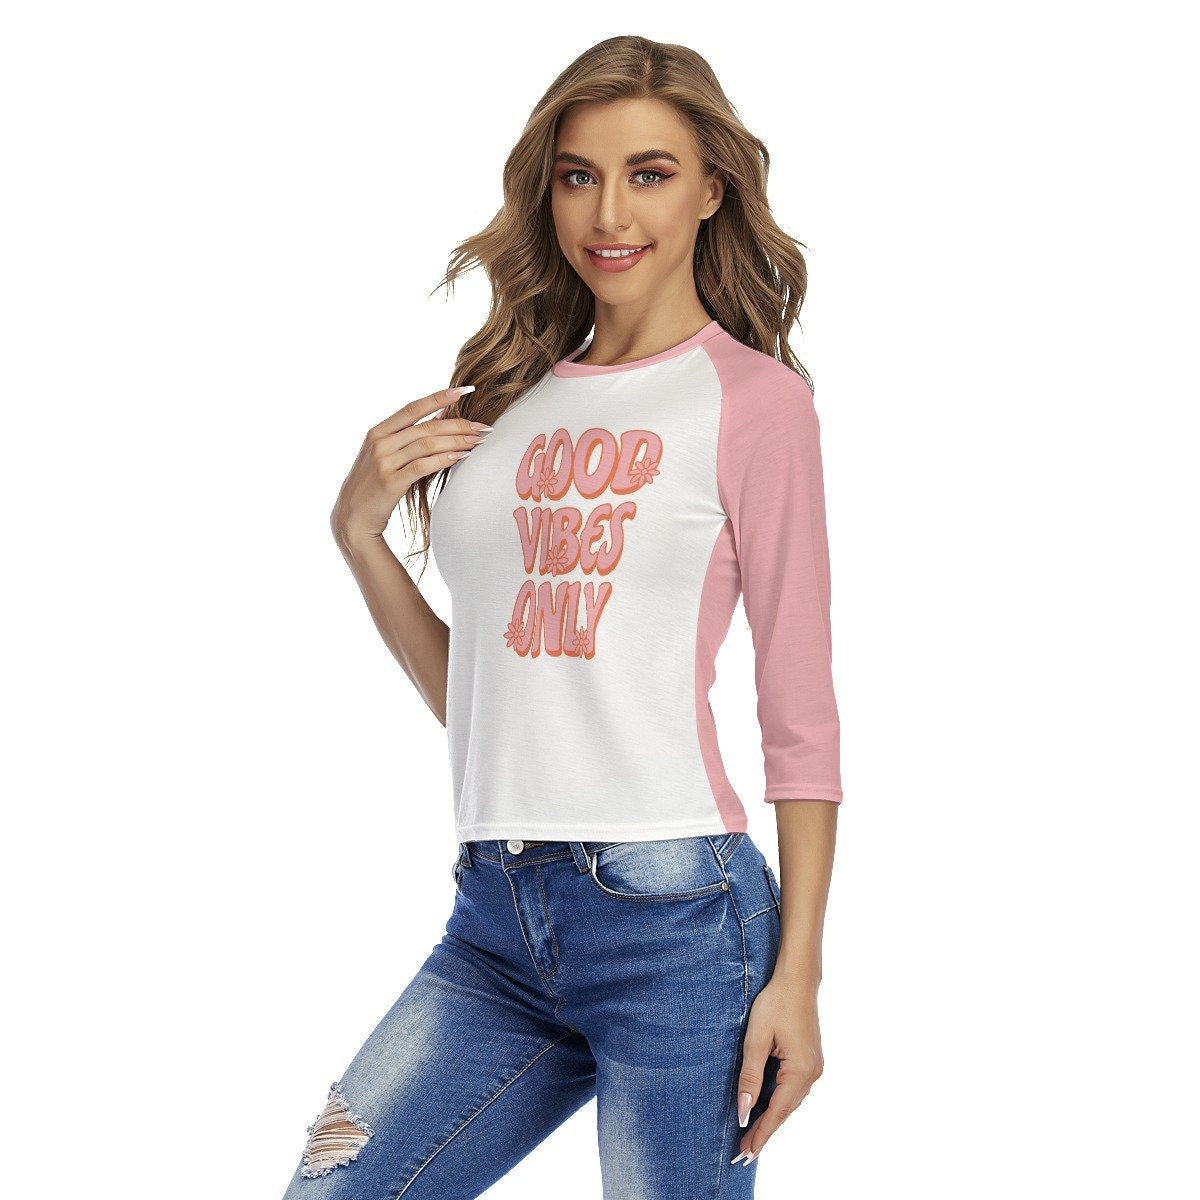 Retro Raglan Shirt, Raglan Tee, Pink Raglan Shirt, Retro Words Tshirt, Good Vibes Shirt,Retro Top Women, 70s style shirt, Raglan Shirt Women